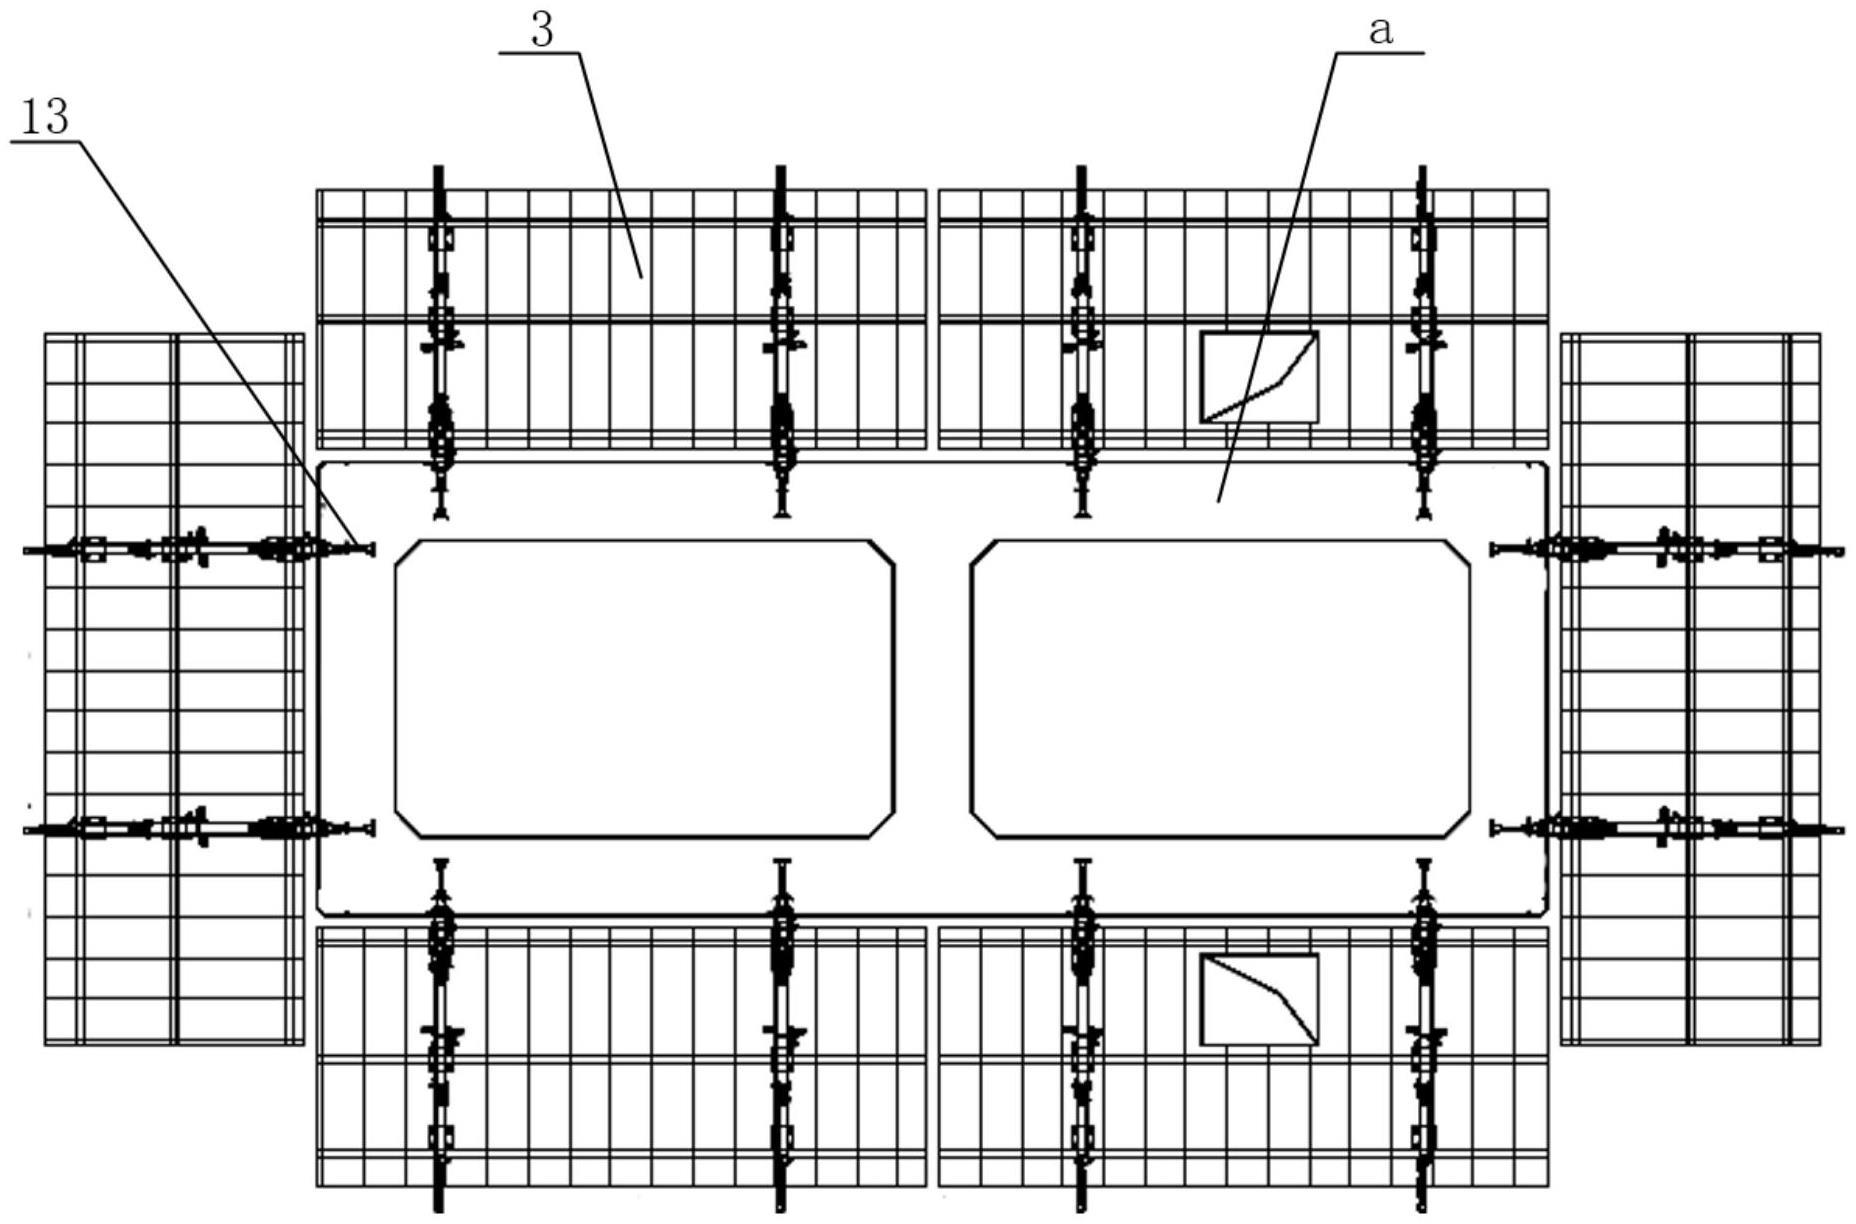 用于大截面双室空心薄壁式高墩施工的悬臂模板架构的制作方法